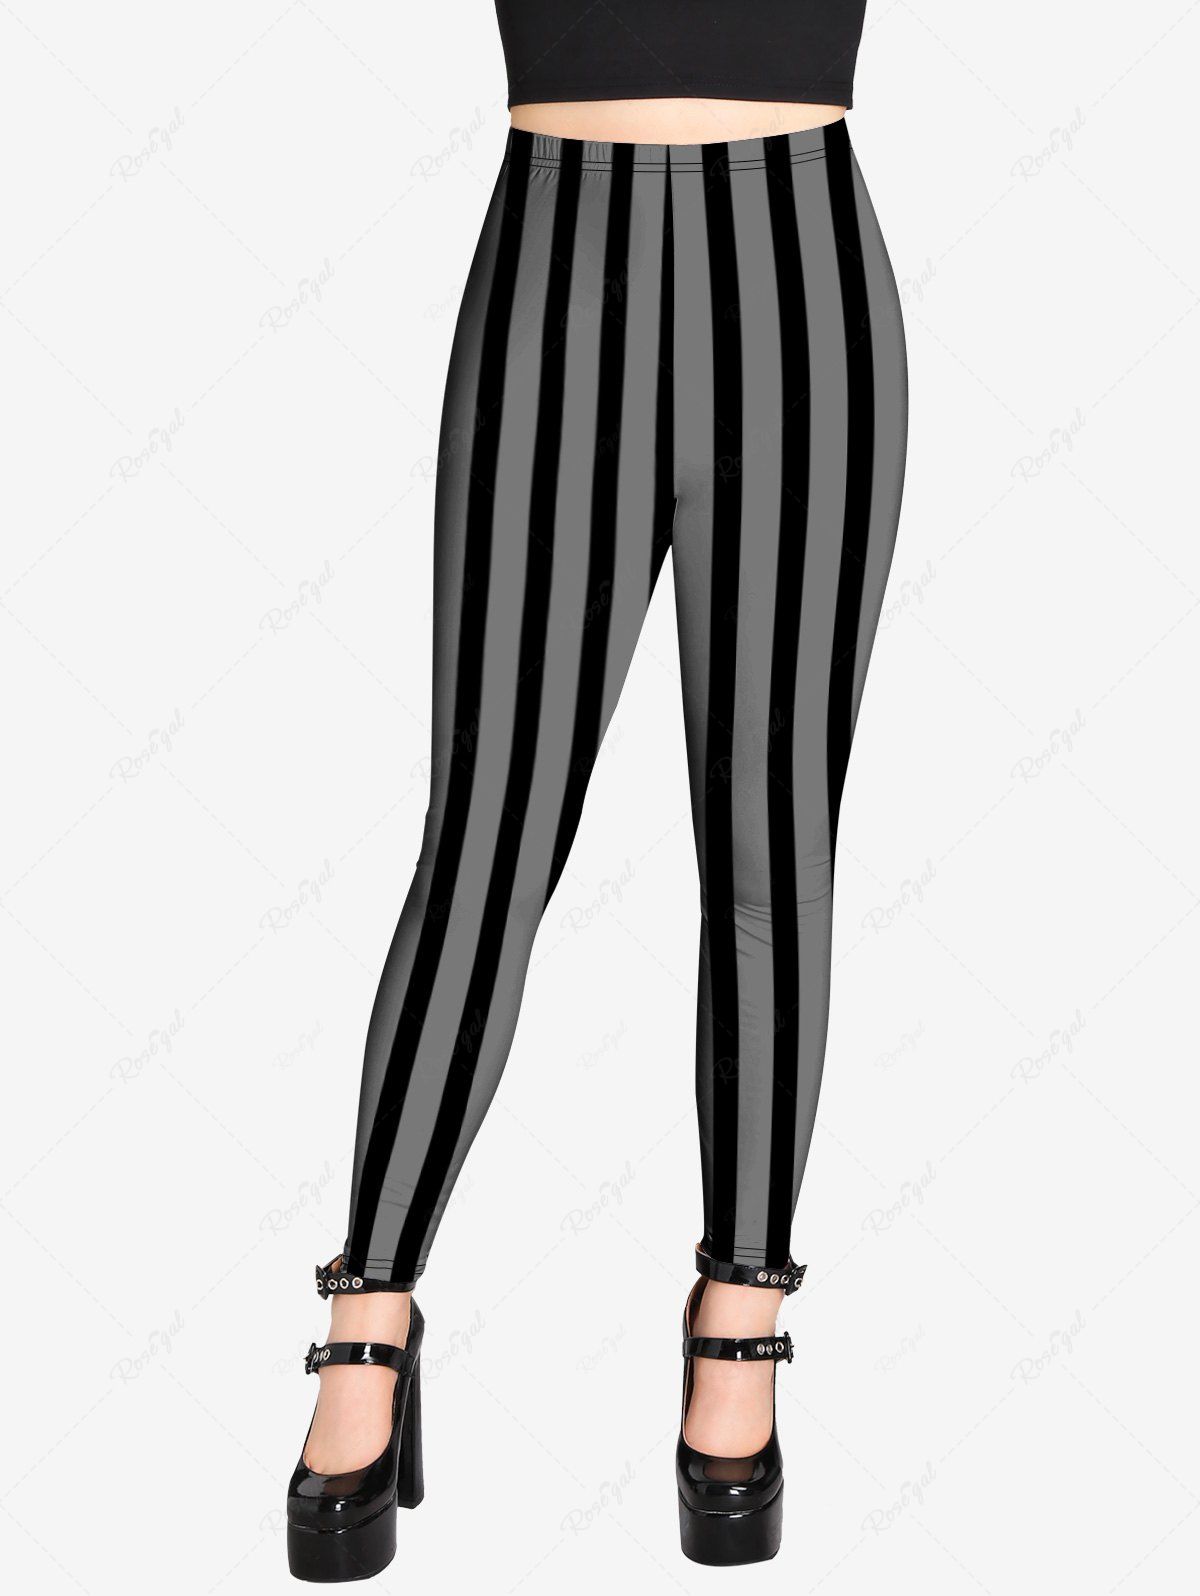 💗Lauren Loves💗 Gothic Striped Print Skinny Leggings